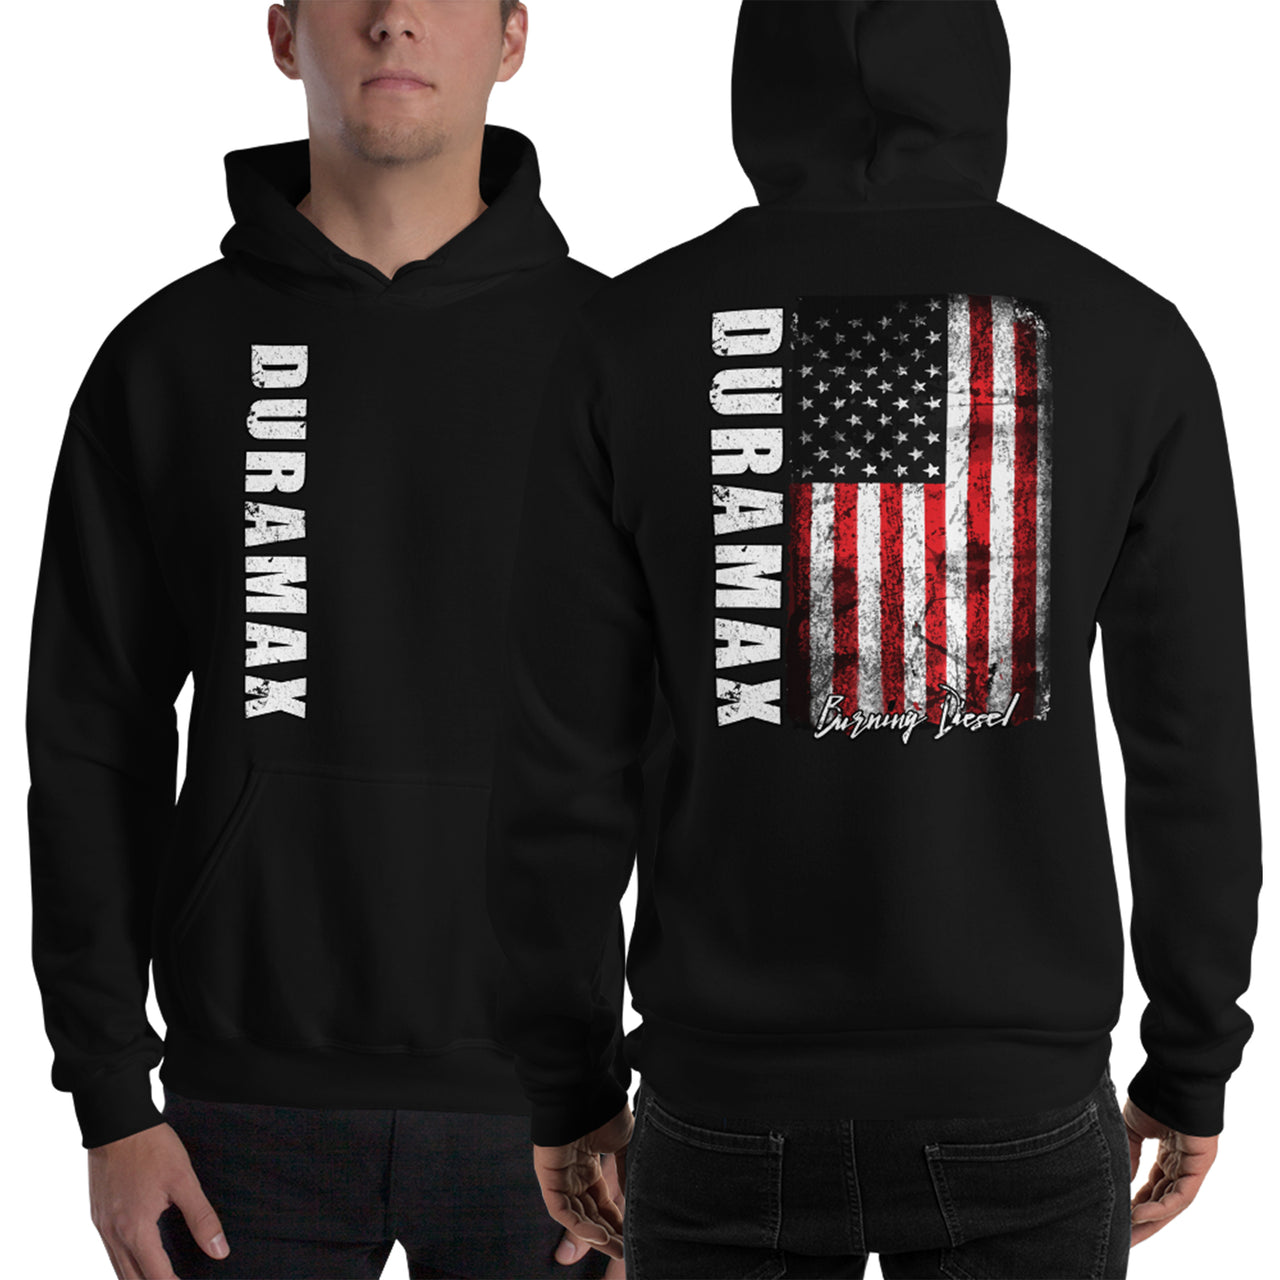 Duramax American Flag Hoodie, Patriotic Diesel Truck Sweatshirt